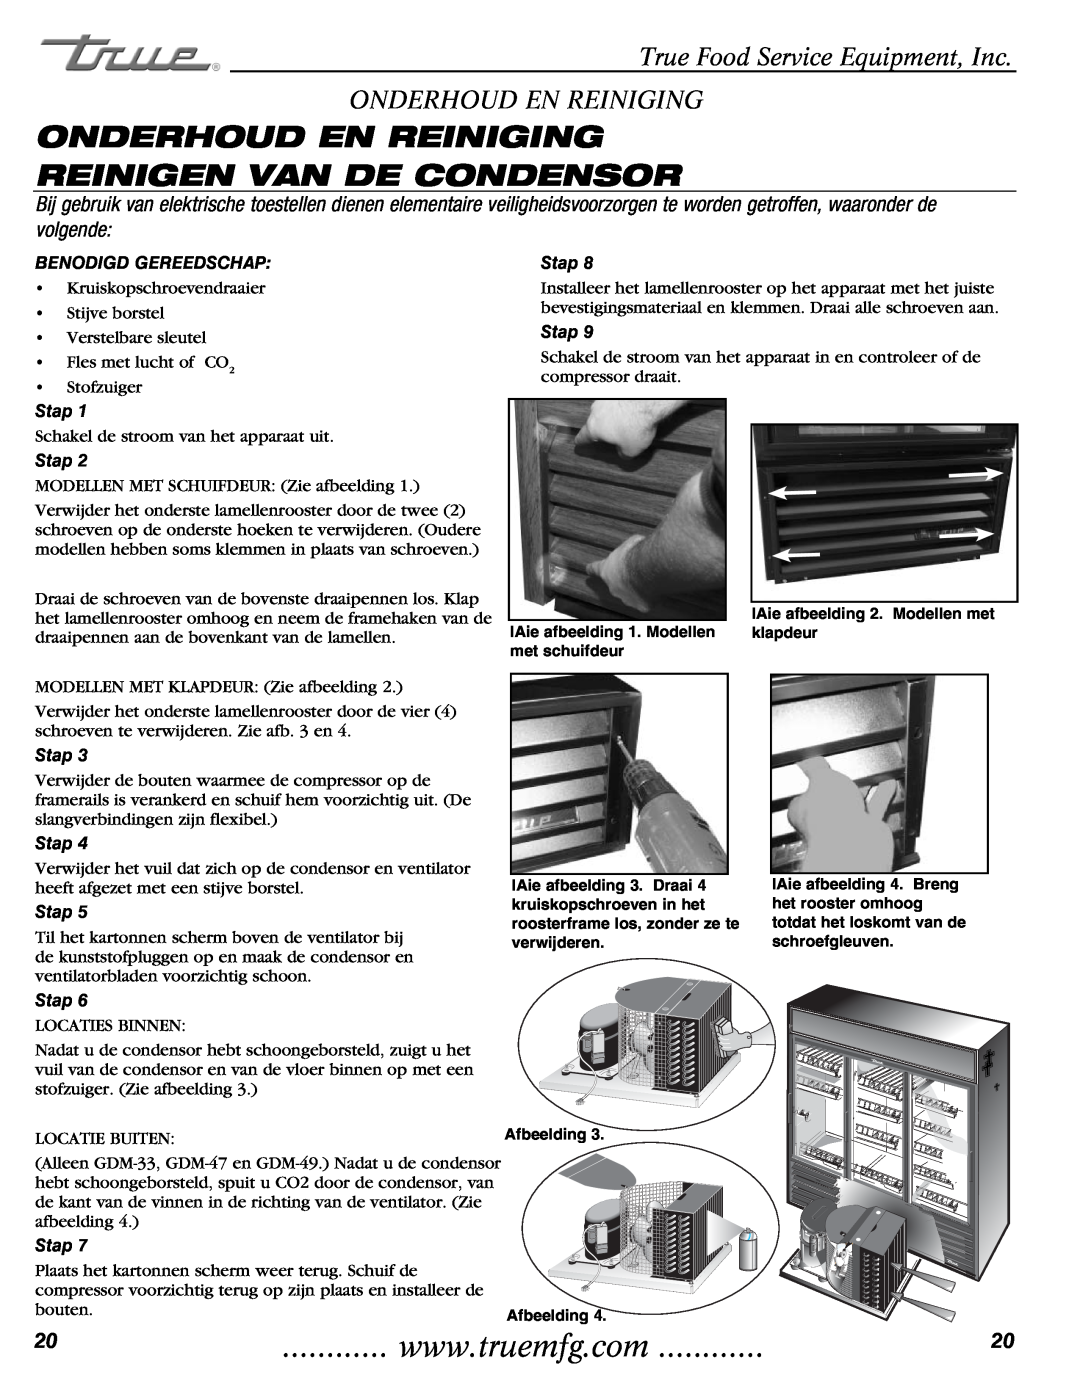 True Manufacturing Company GDM-49, GDM-23 Onderhoud En Reiniging Reinigen Van De Condensor, Benodigd Gereedschap, Stap 